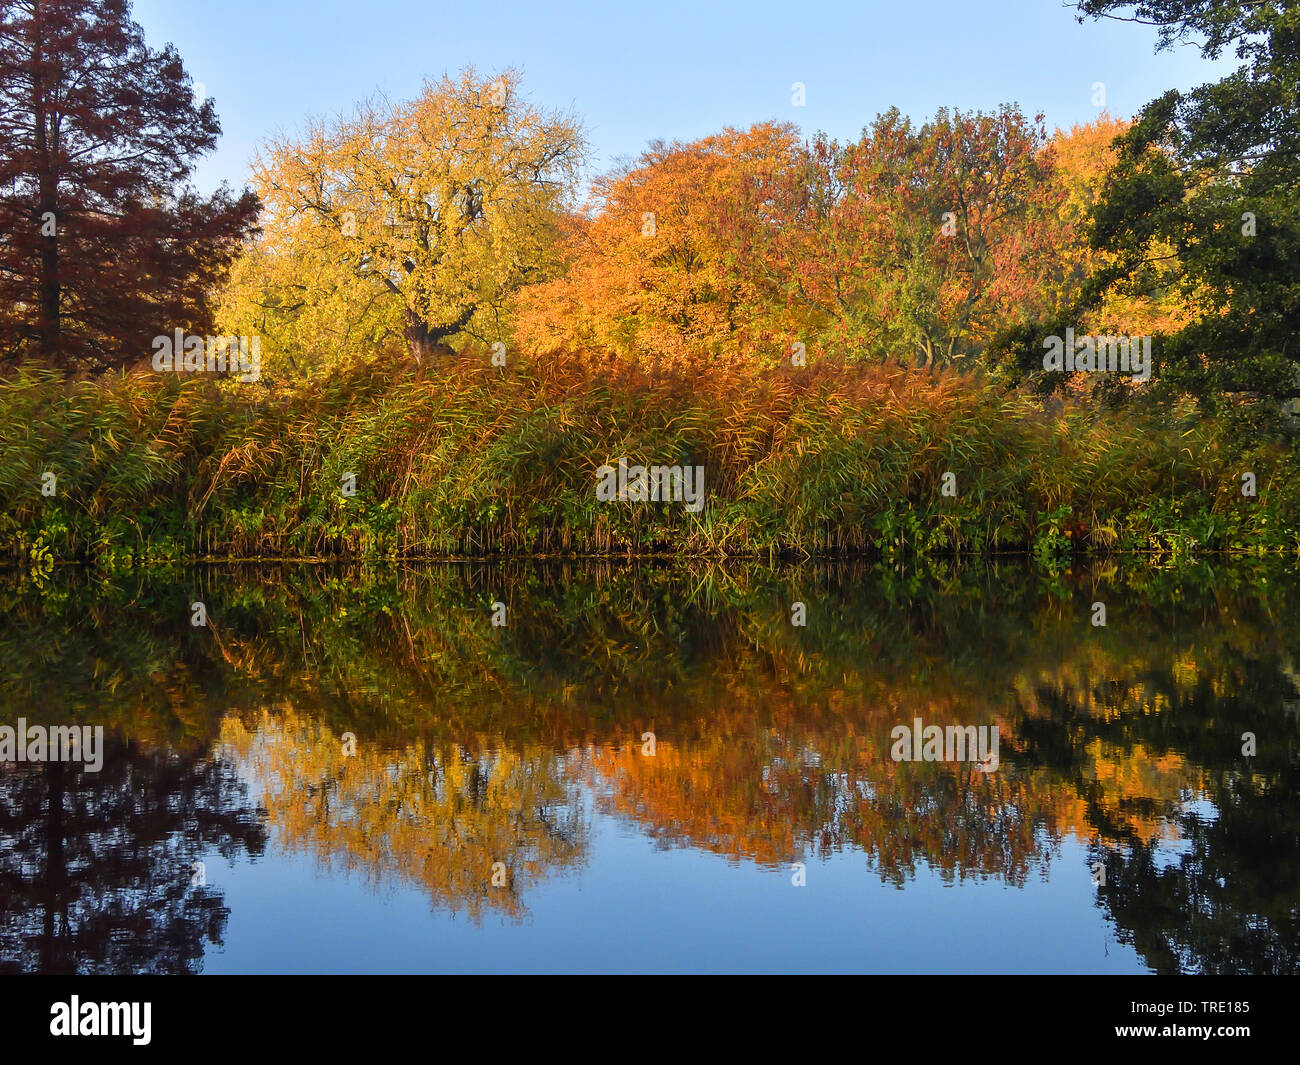 Reflet d'automne au lac Alster, Allemagne Banque D'Images